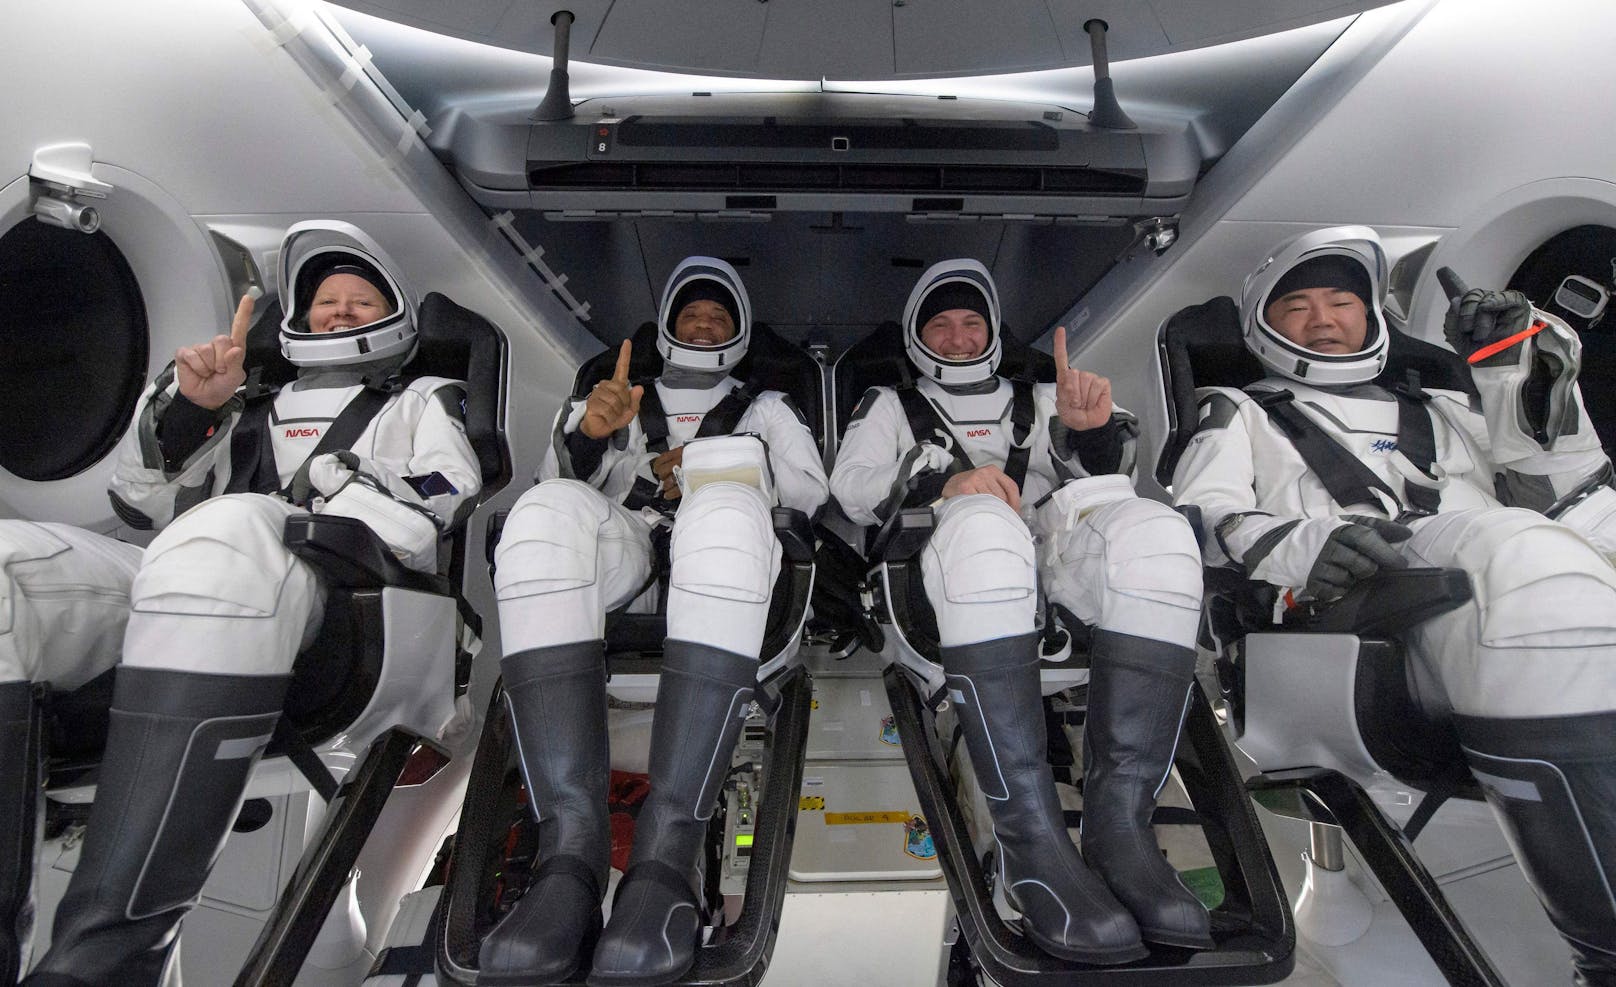 <strong>ISS-Crewmitglieder sind Versuchskaninchen!&nbsp;</strong>Wusstest du, dass jedes ISS-Crewmitglied nicht nur Versuche durchführt, sondern auch selbst Versuchskaninchen ist? Forschende wollen erkunden, welche gesundheitlichen Probleme bei Reisen in den Weltraum auftreten und wie sie zu behandeln sind. Typisch sind etwa Muskelschwund, Augenschäden und verringerte Knochendichte. Zudem haben ISS-Astronautinnen und -Astronauten eine Körpertemperatur von etwa 38 Grad, also eine Art Dauerfieber. Bei sportlicher Aktivität steigt die Temperatur sogar häufig auf mehr als 40 Grad, weil der Körper überschüssige Hitze in der Schwerelosigkeit kaum loswerden kann.